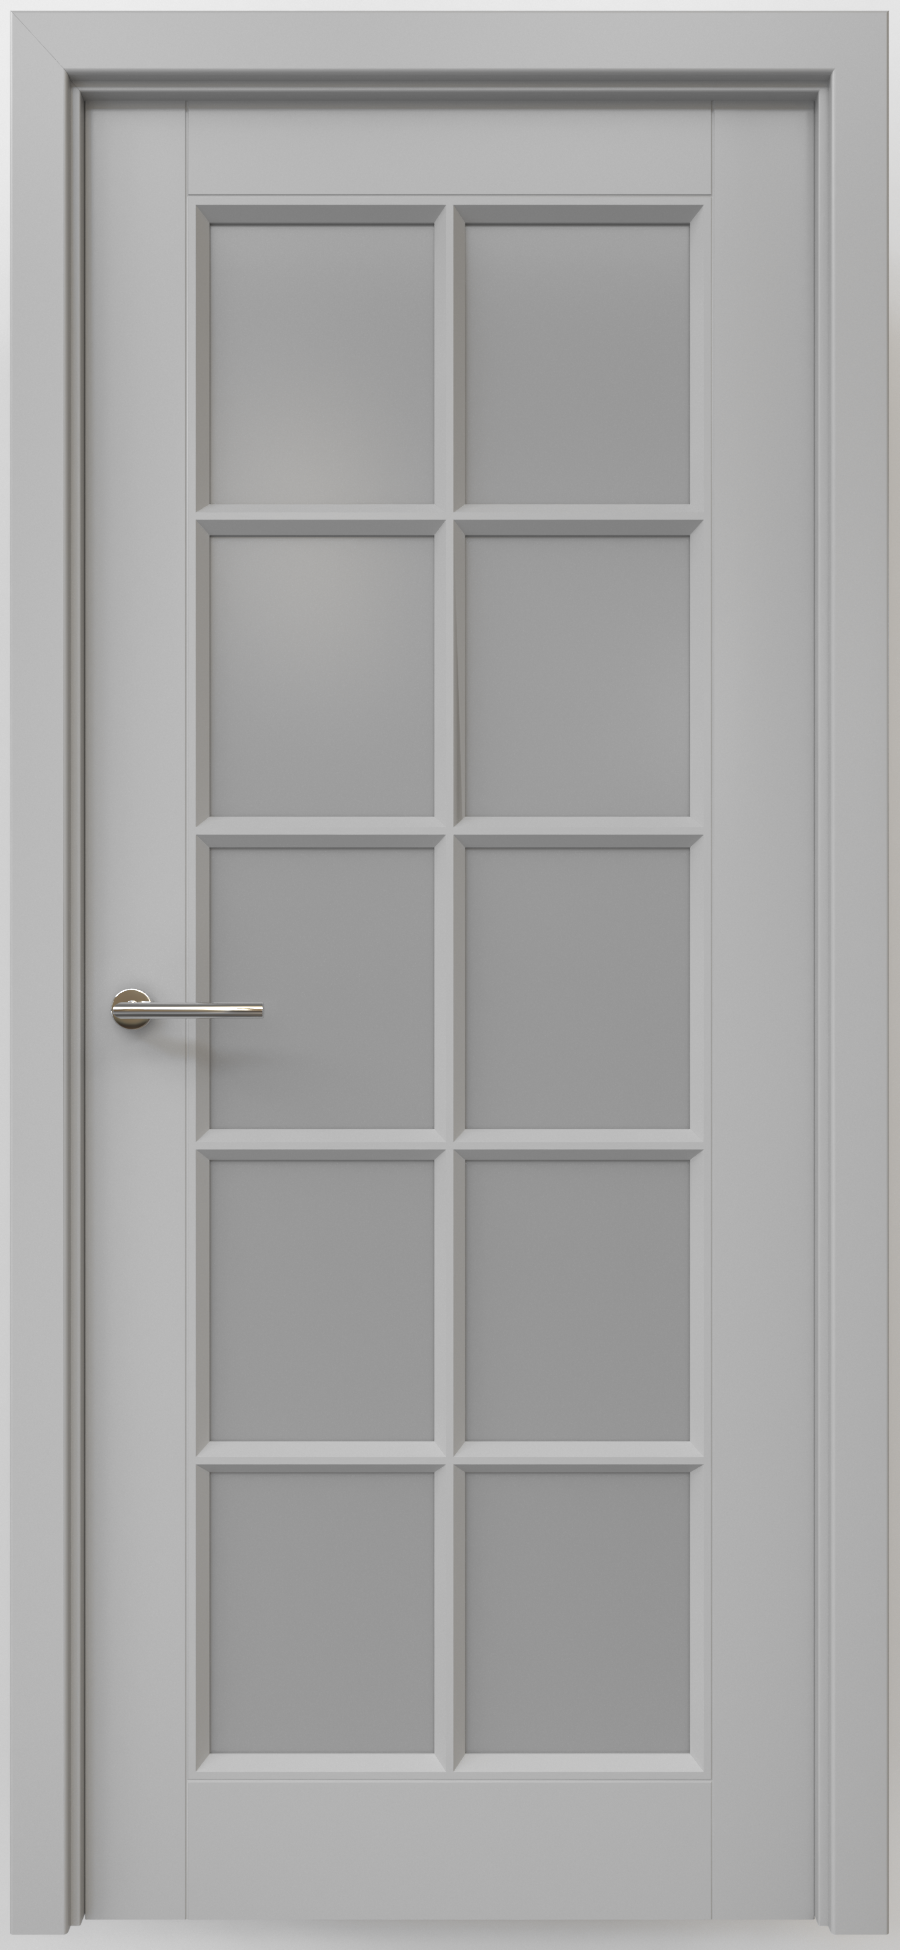 Полотно дверное остекленное Эмаль Классика-5 ЛЕВОЕ 800 серый стекло мателюкс (защелка маг.)